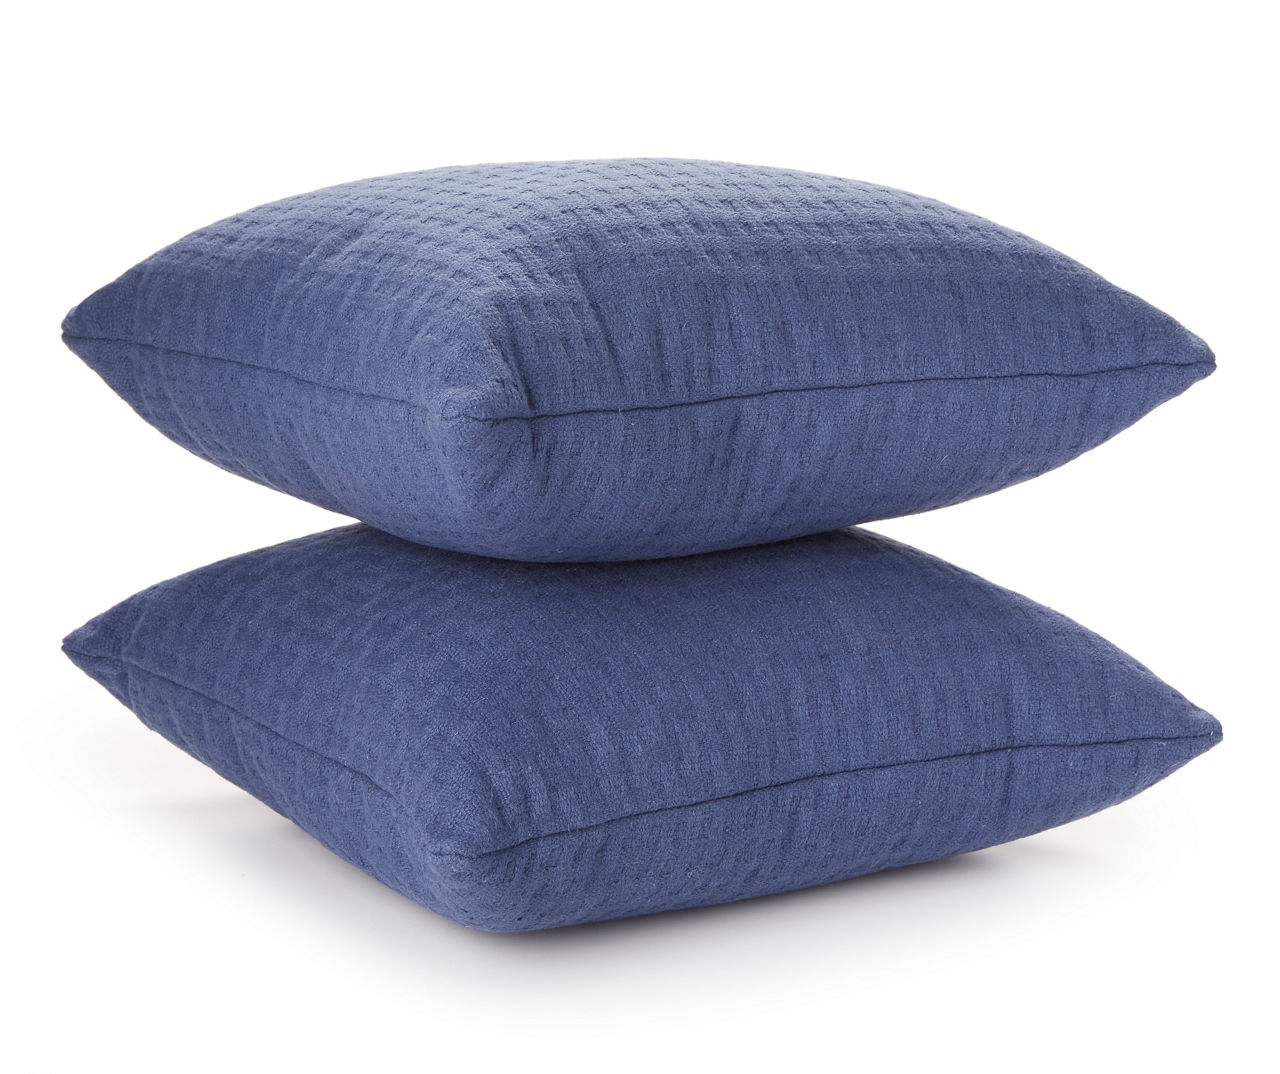 Blue Throw Pillow